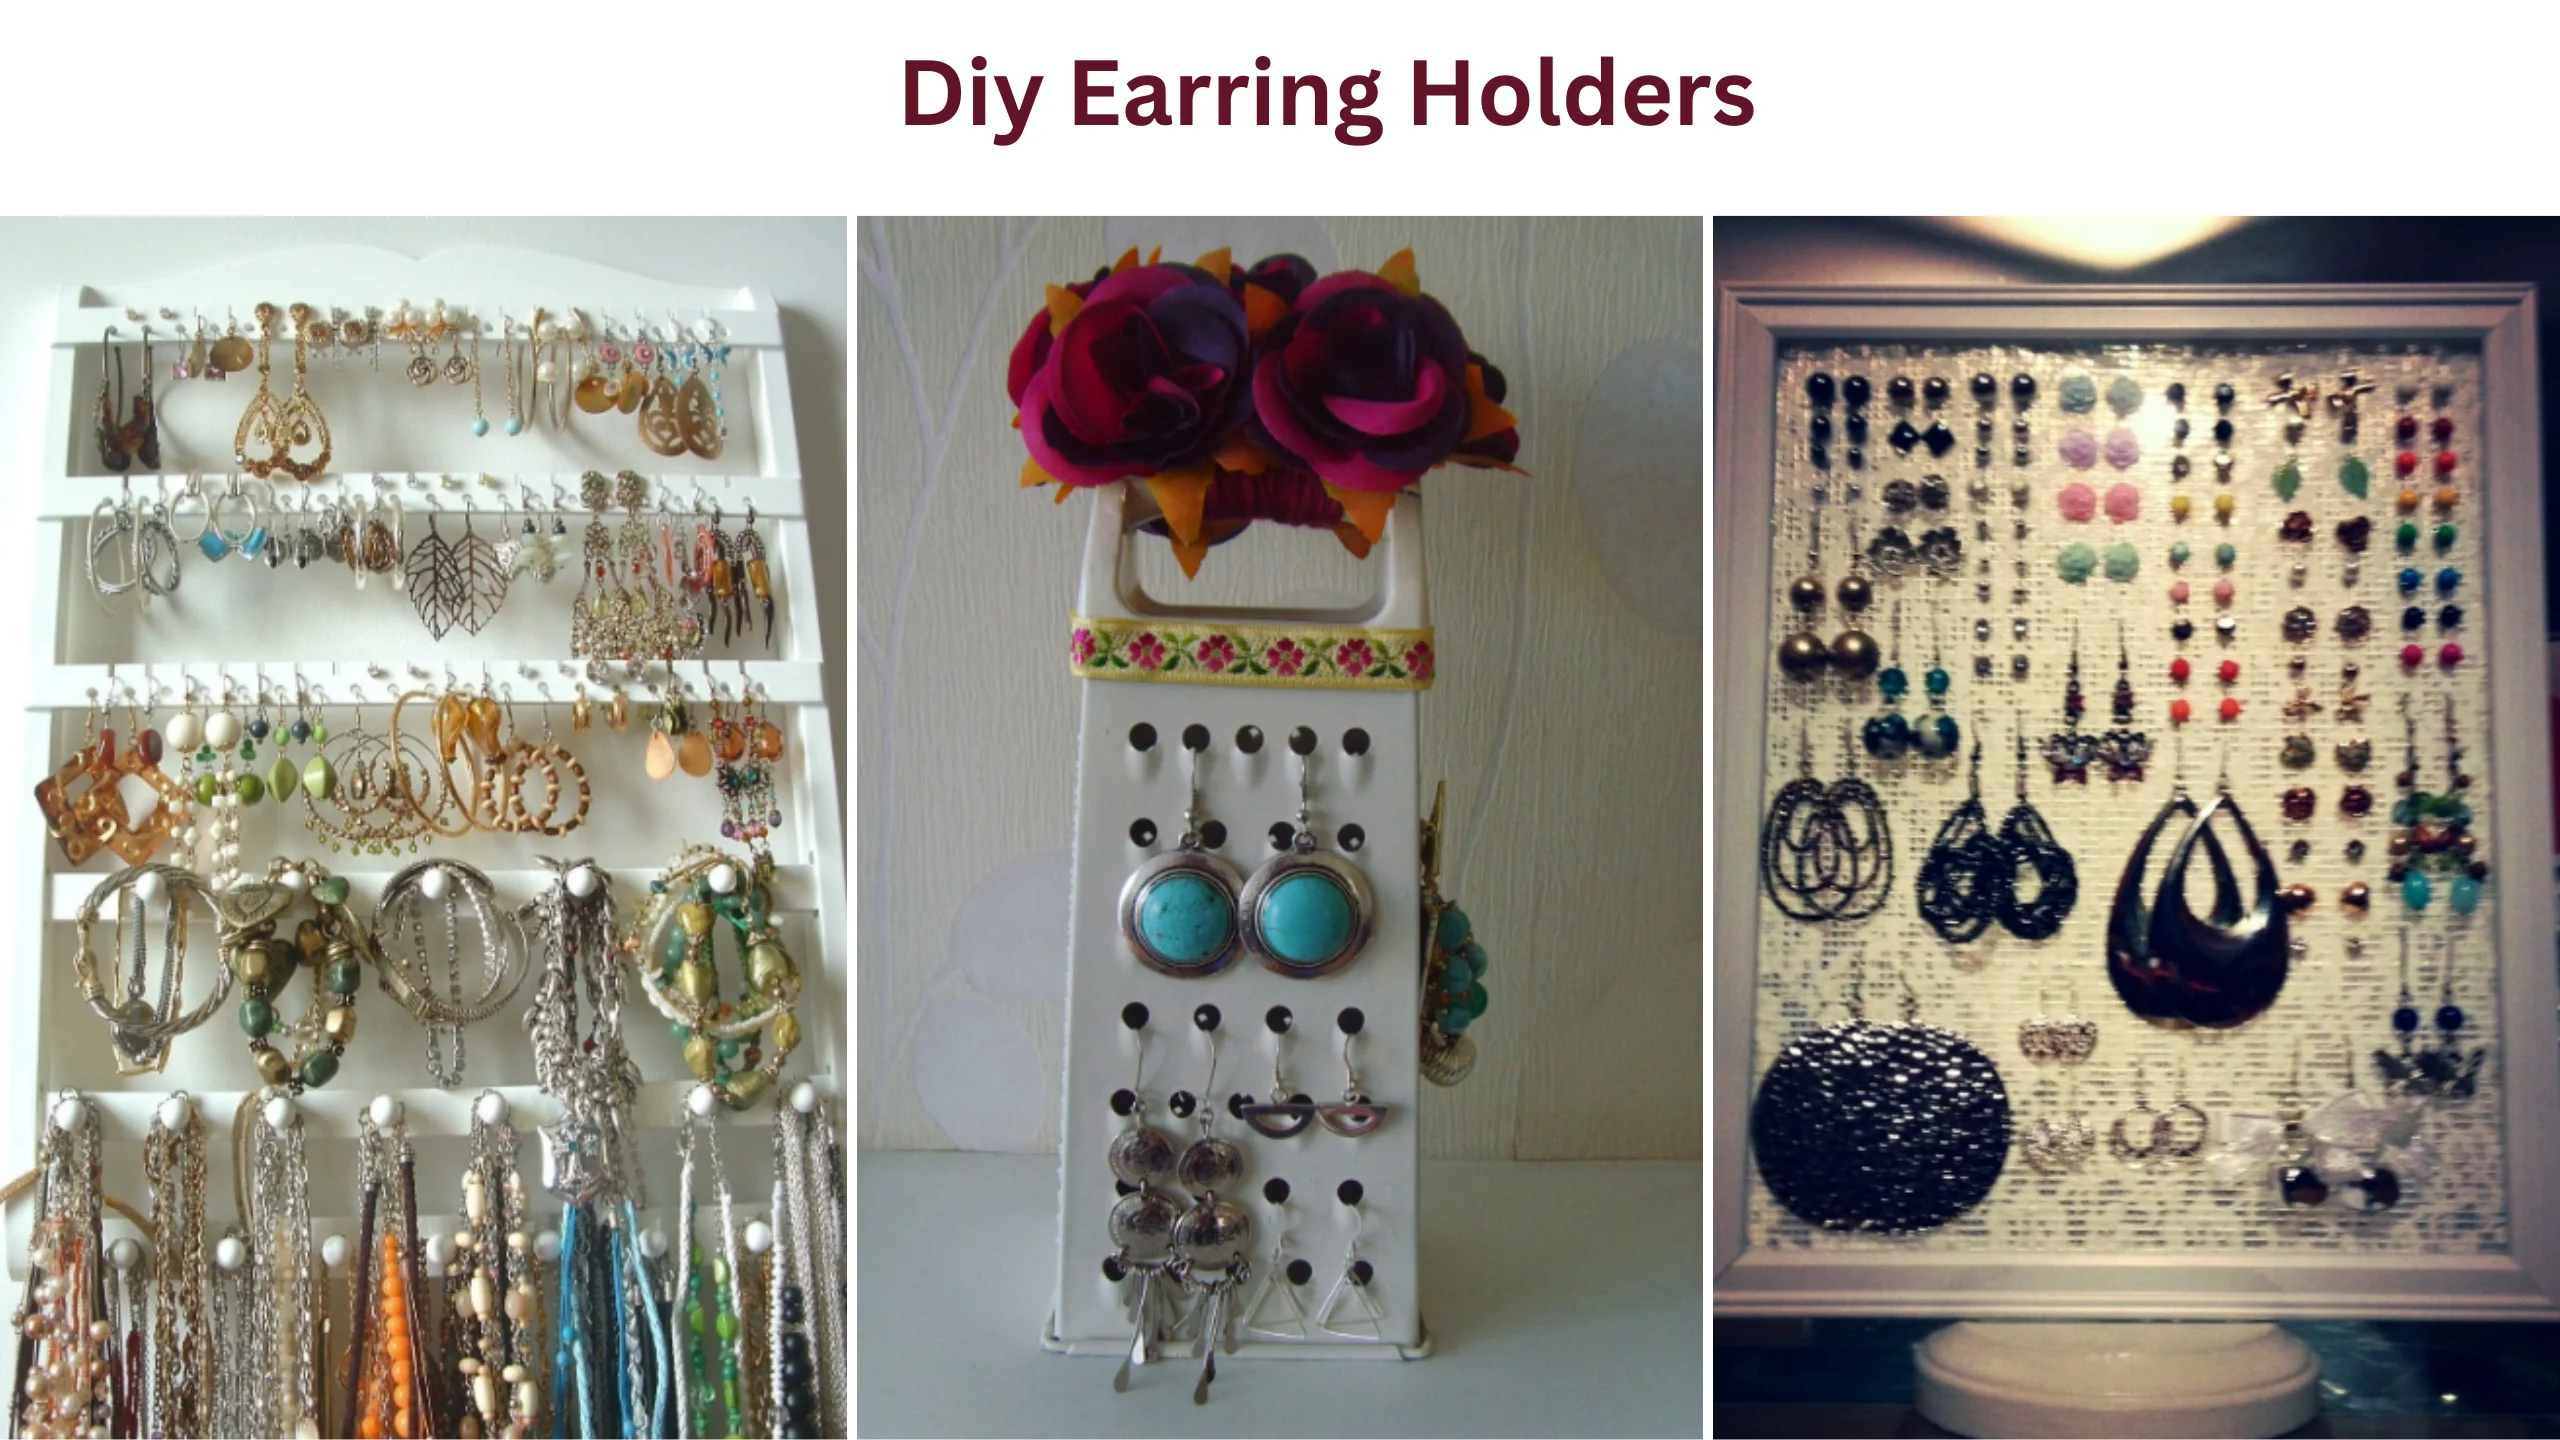 Diy earring holders